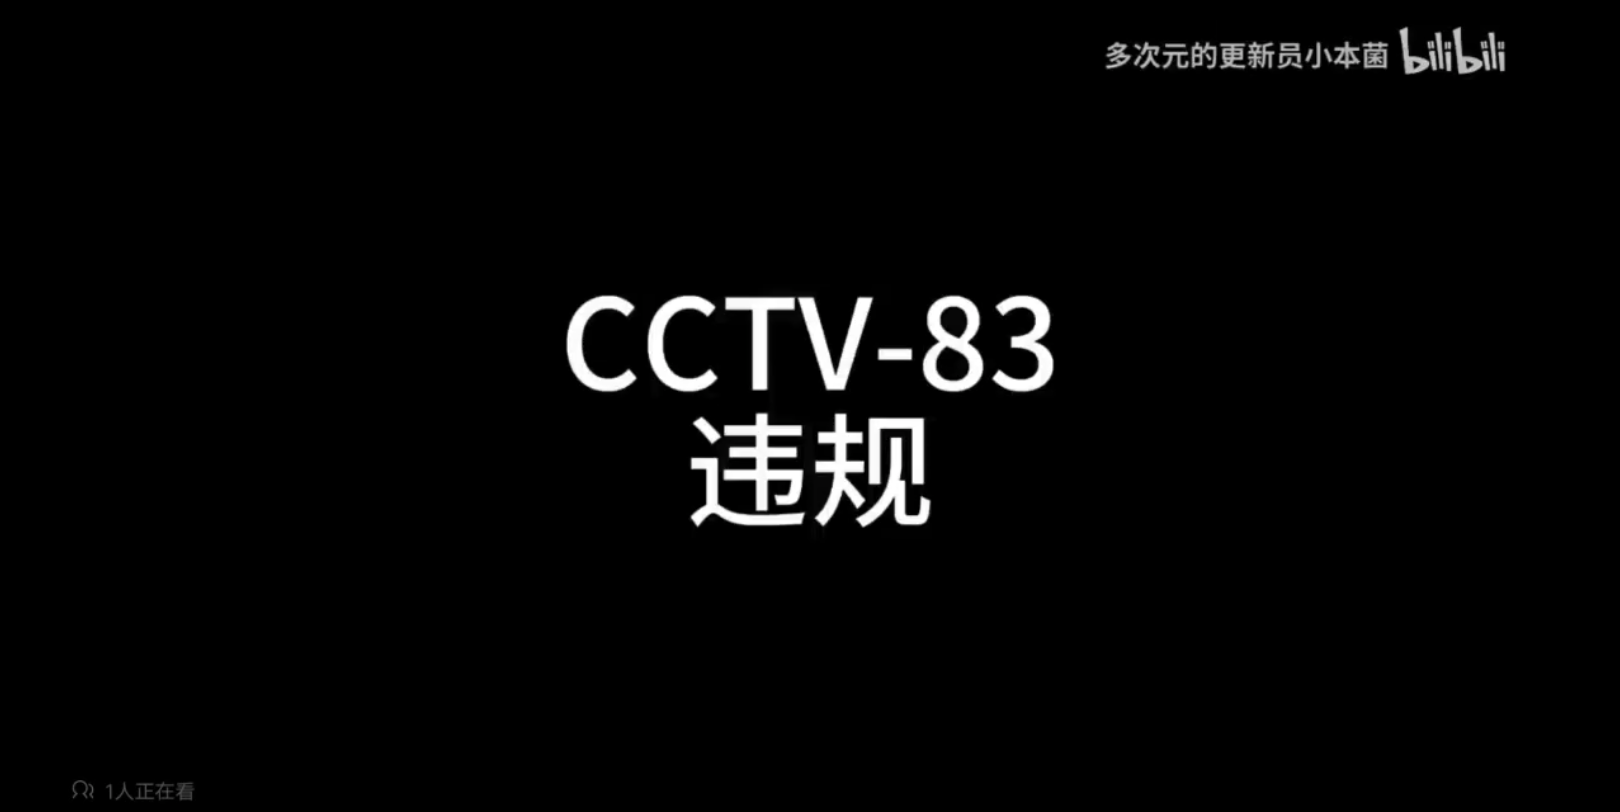 [架空电视]停播cctv83转播内蒙古语文化过程